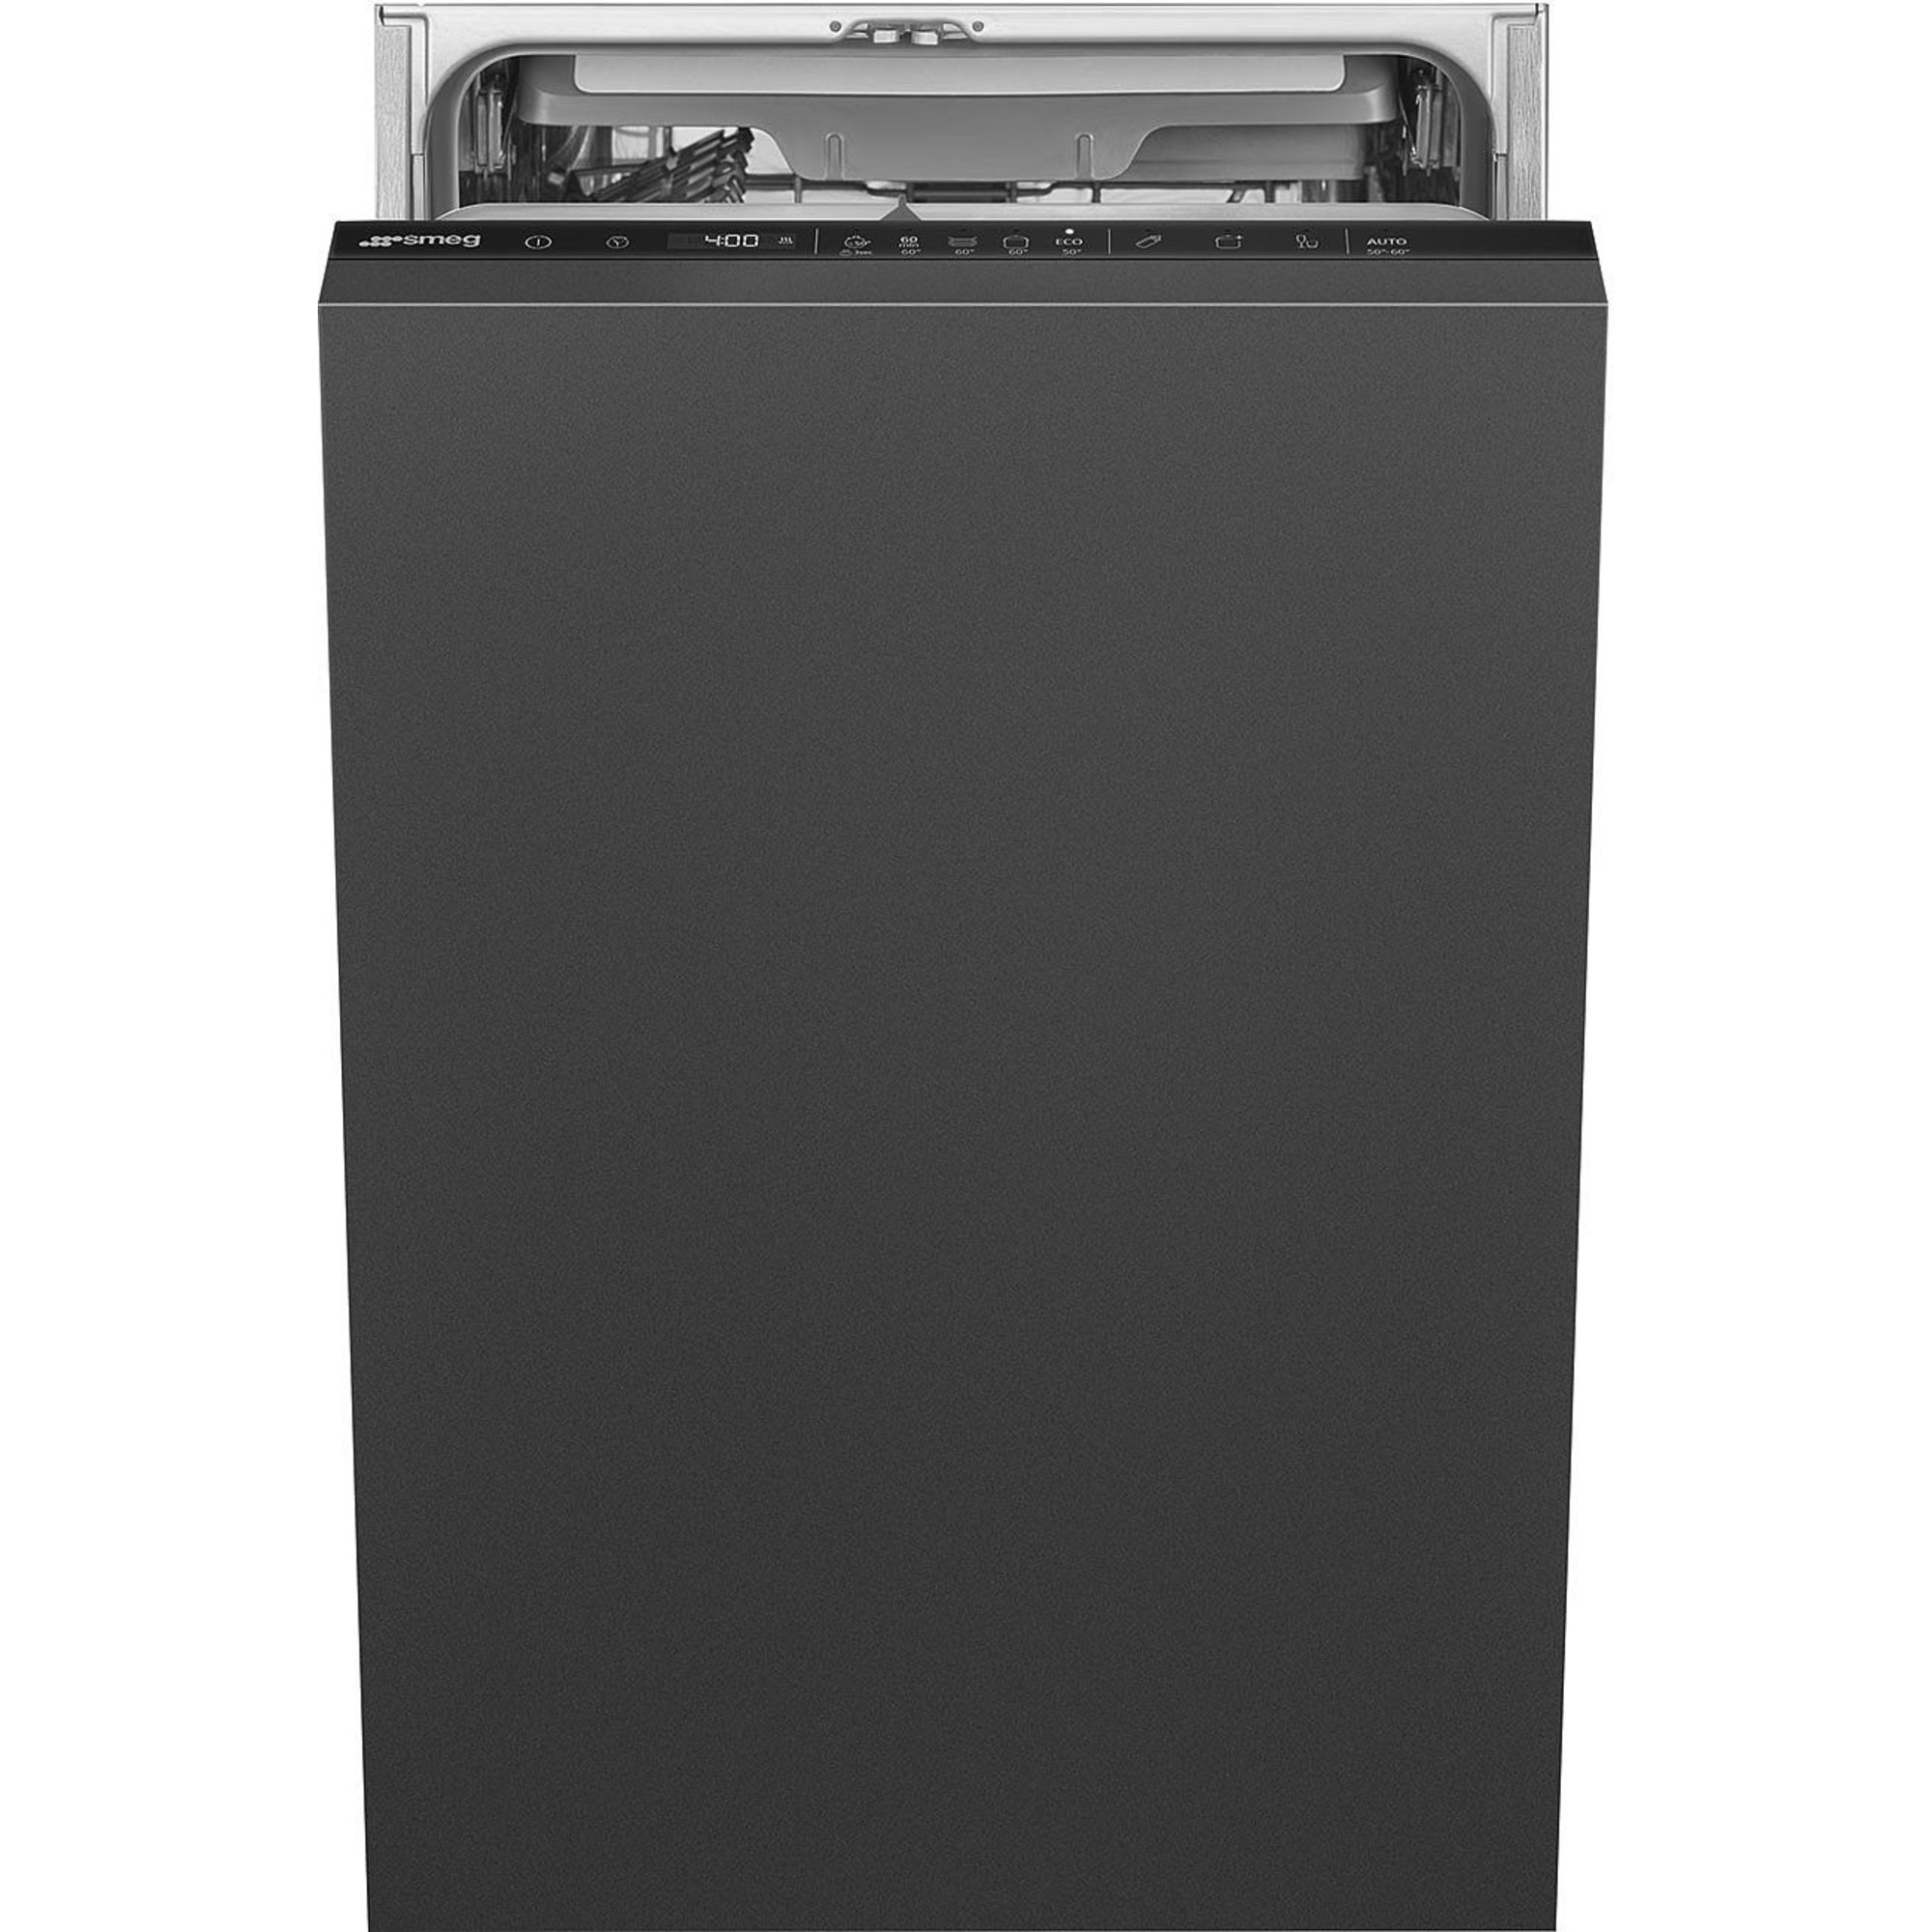 Smeg ST4533IN integrerbar opvaskemaskine